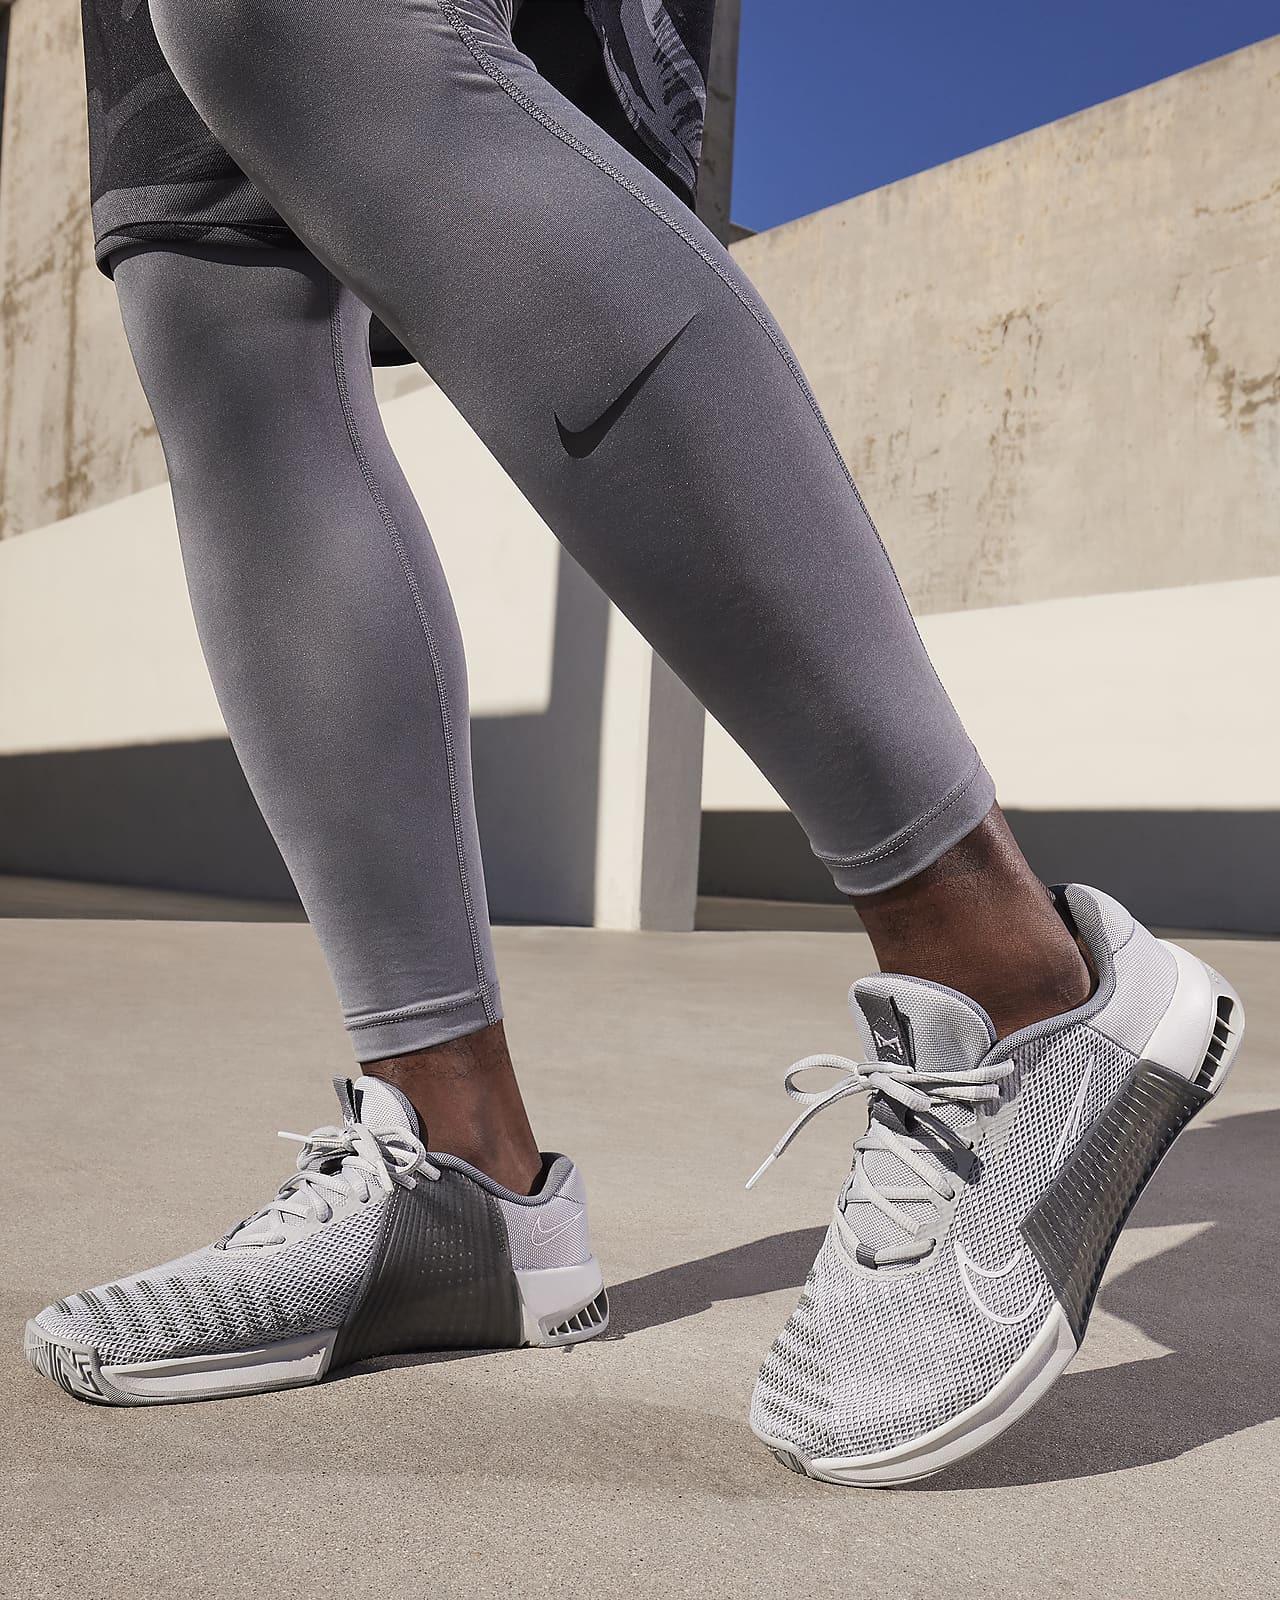 Nike Metcon 9 gris zapatillas cross training hombre